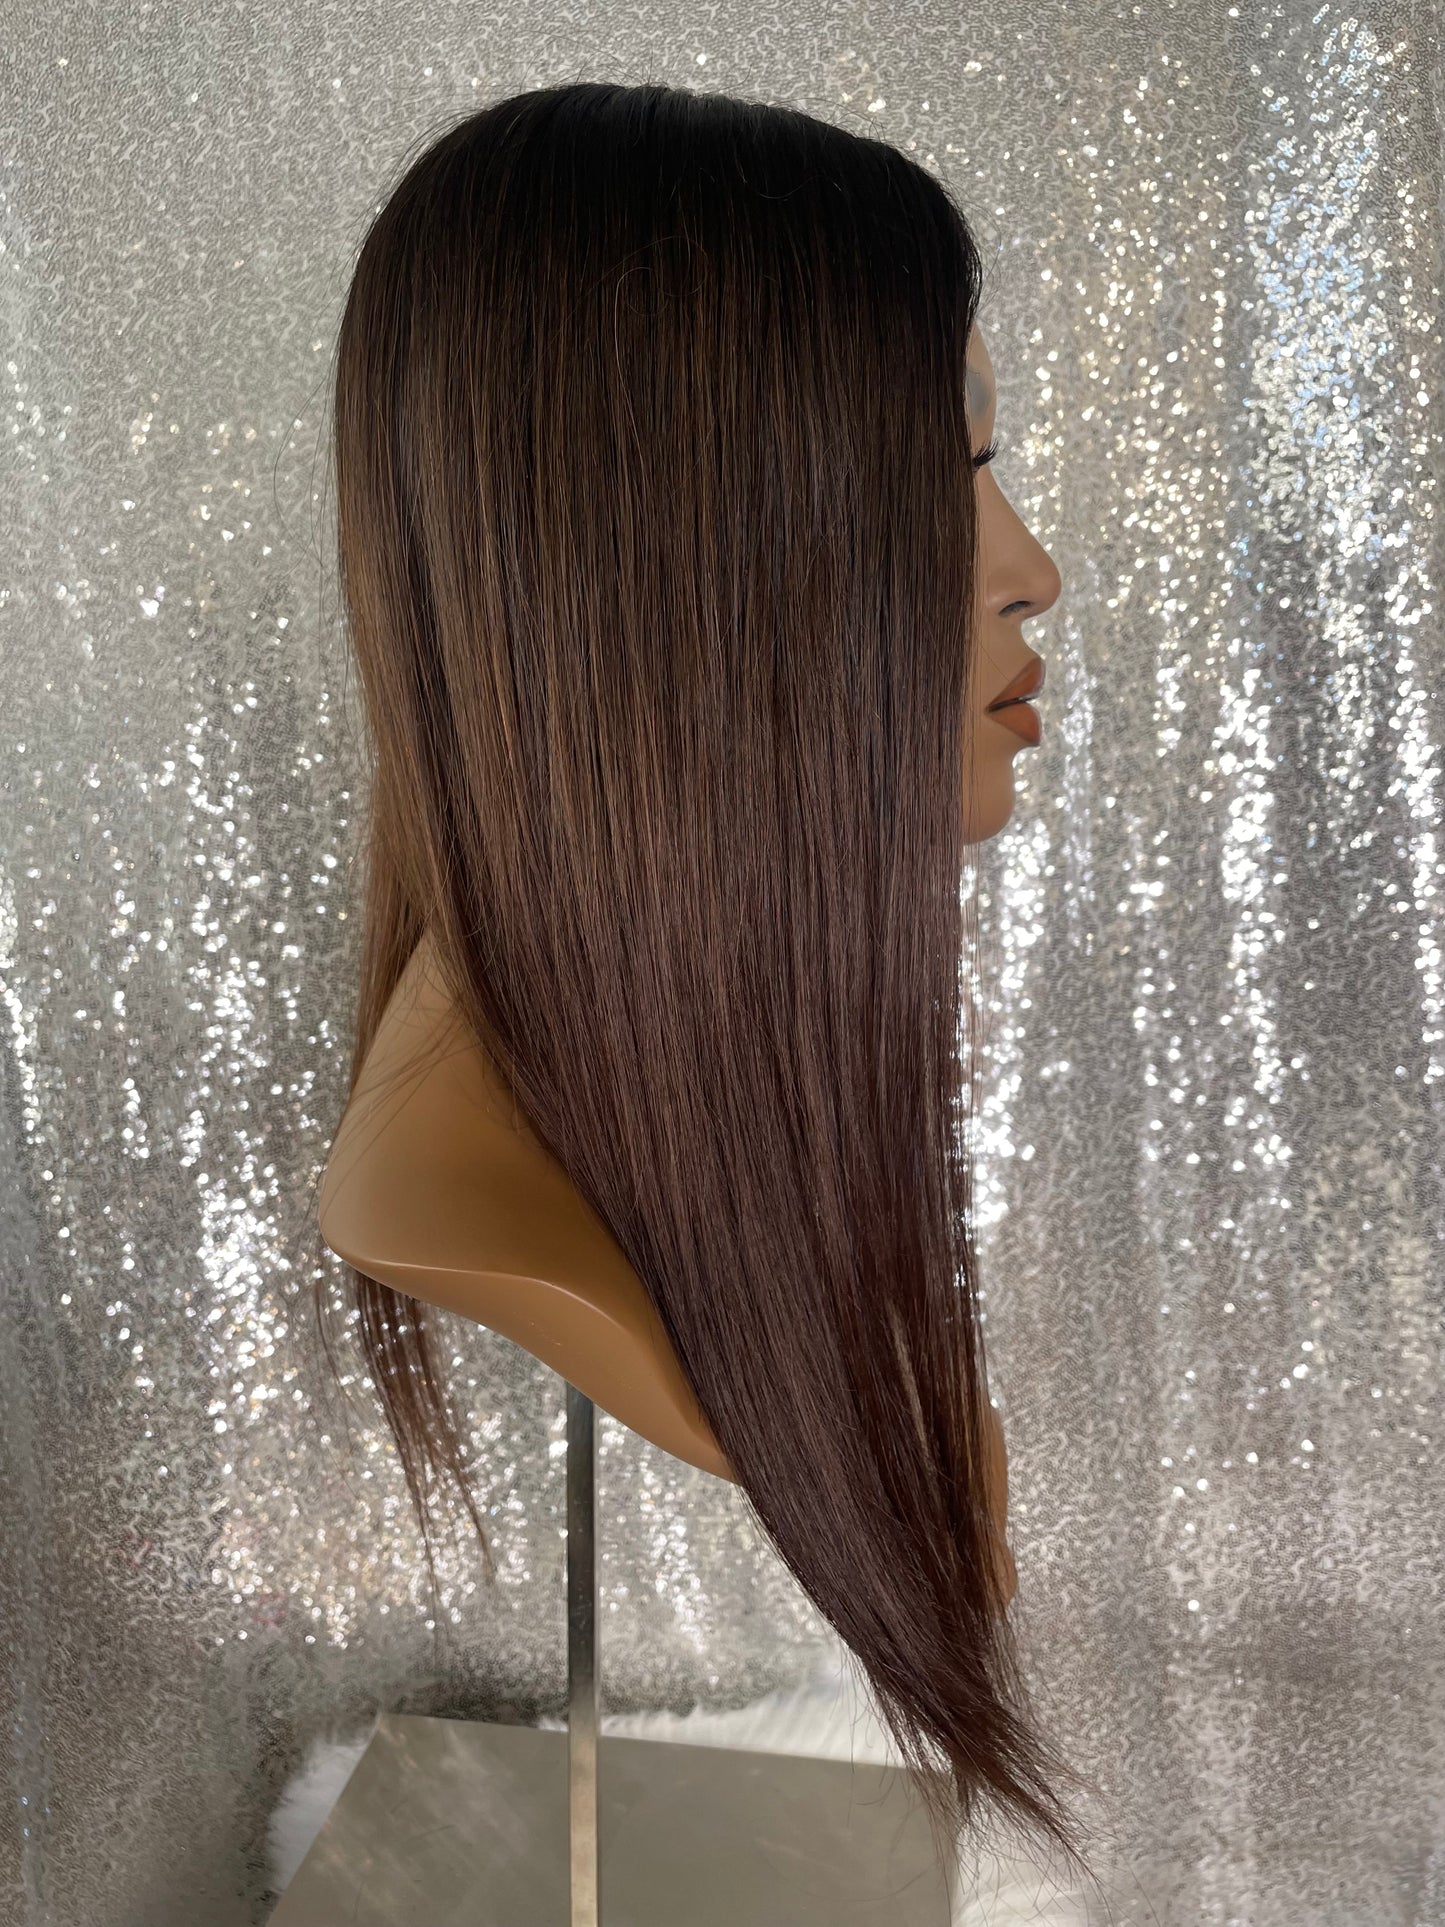 Topper Samantha - 6x6 inch / 130% / 20 inch / european hair 